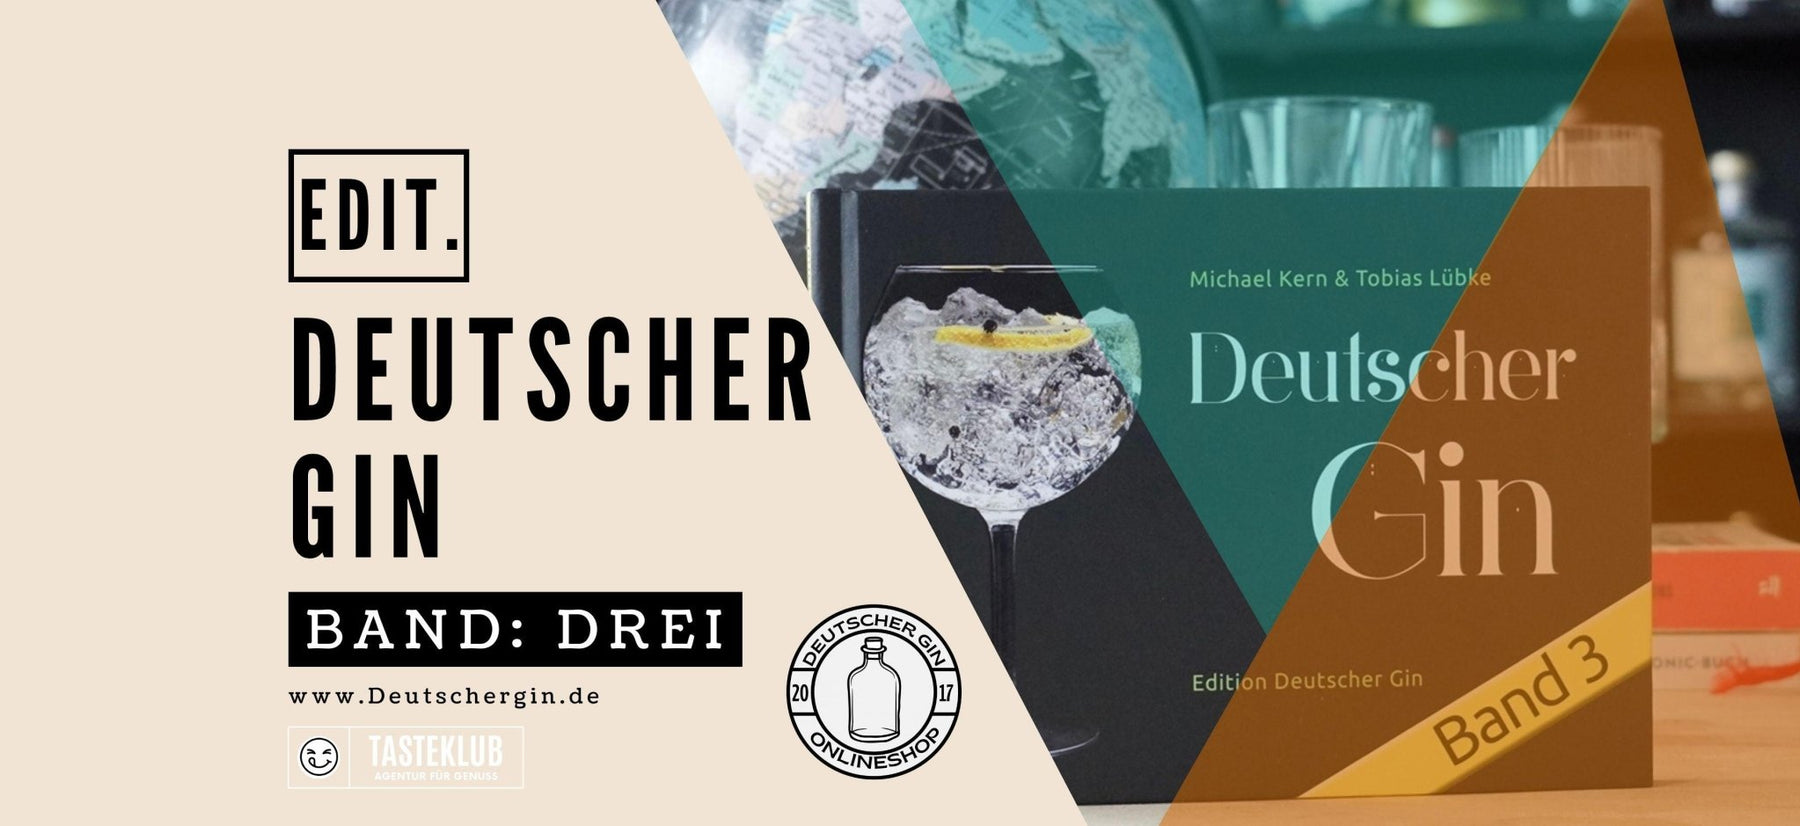 Dresdner Gin - Deutschergin.de